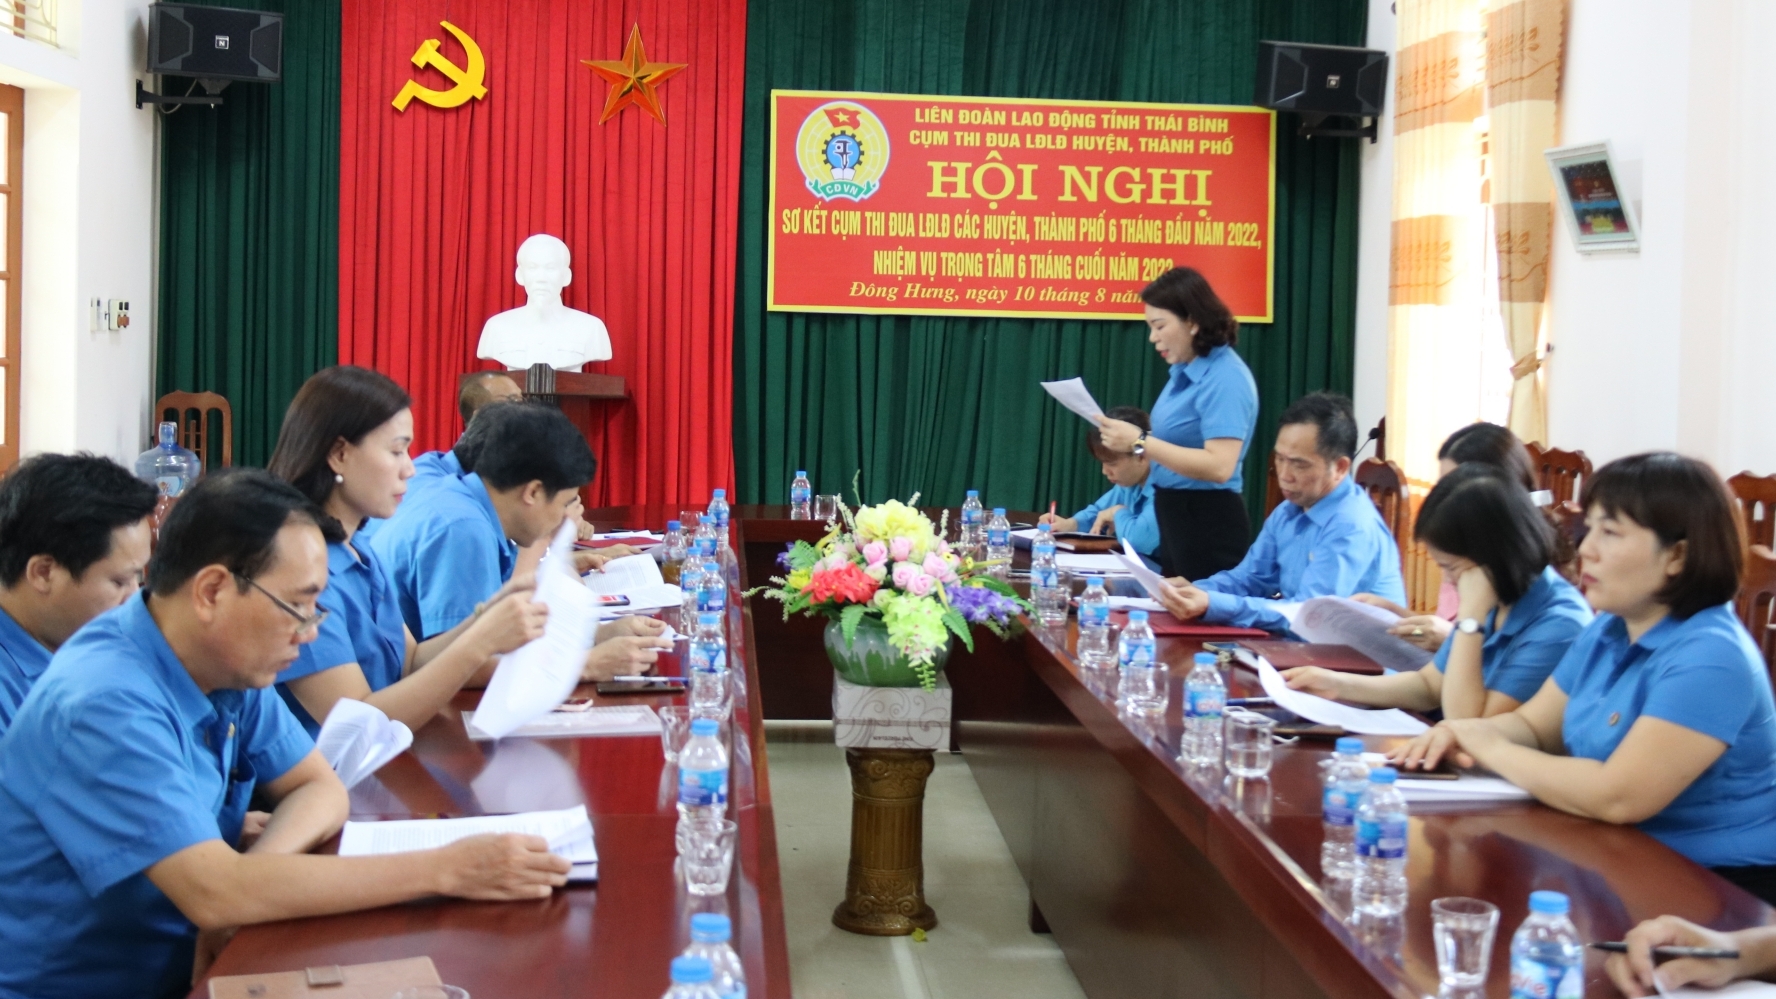 Hoạt động cụm thi đua các LĐLĐ huyện, thành phố ở Thái Bình đạt kết quả nổi bật